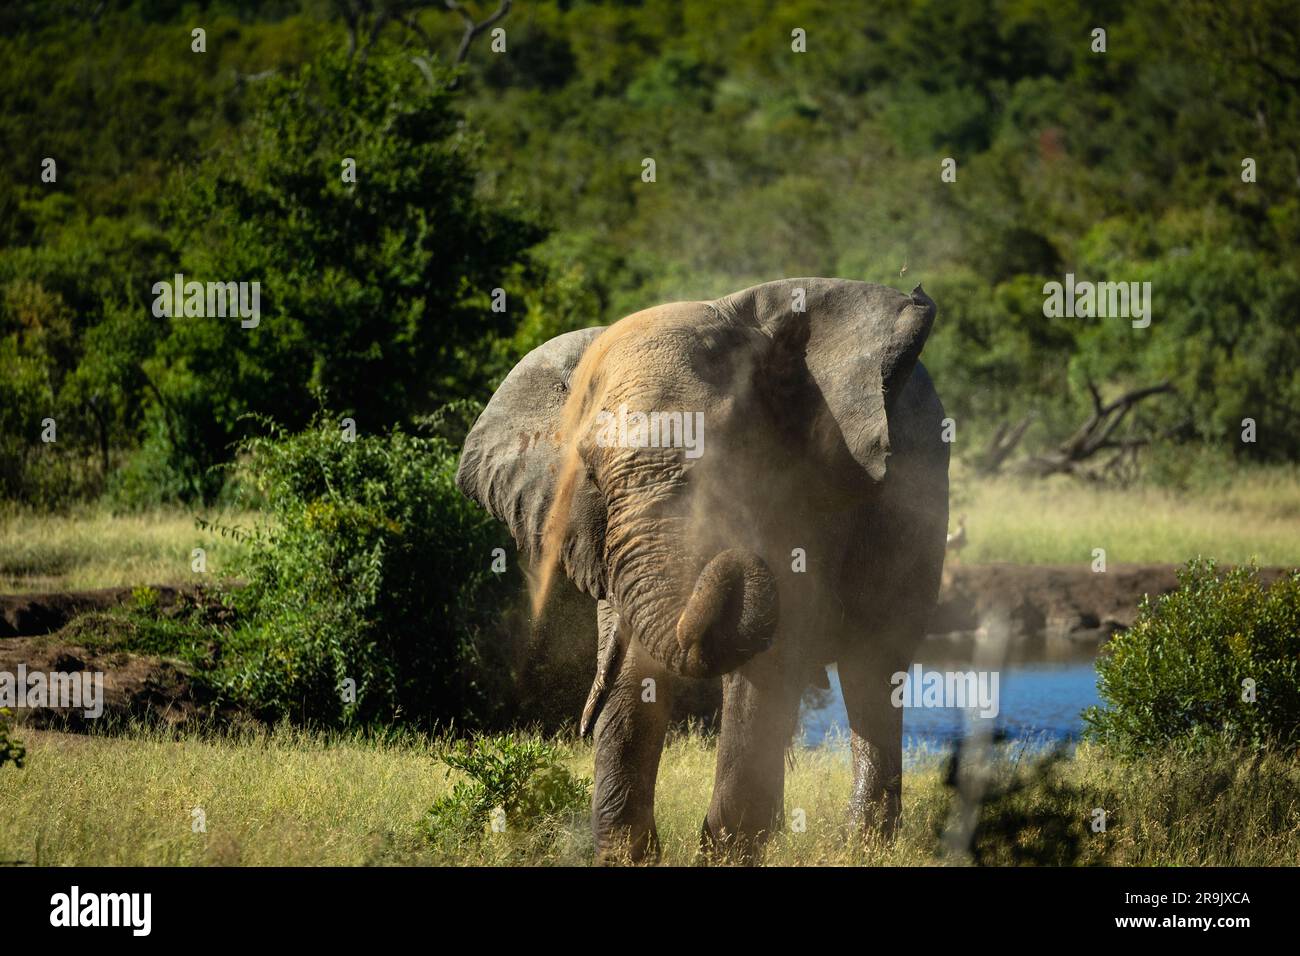 Un éléphant, Loxodonta africana, bain de poussière. Banque D'Images